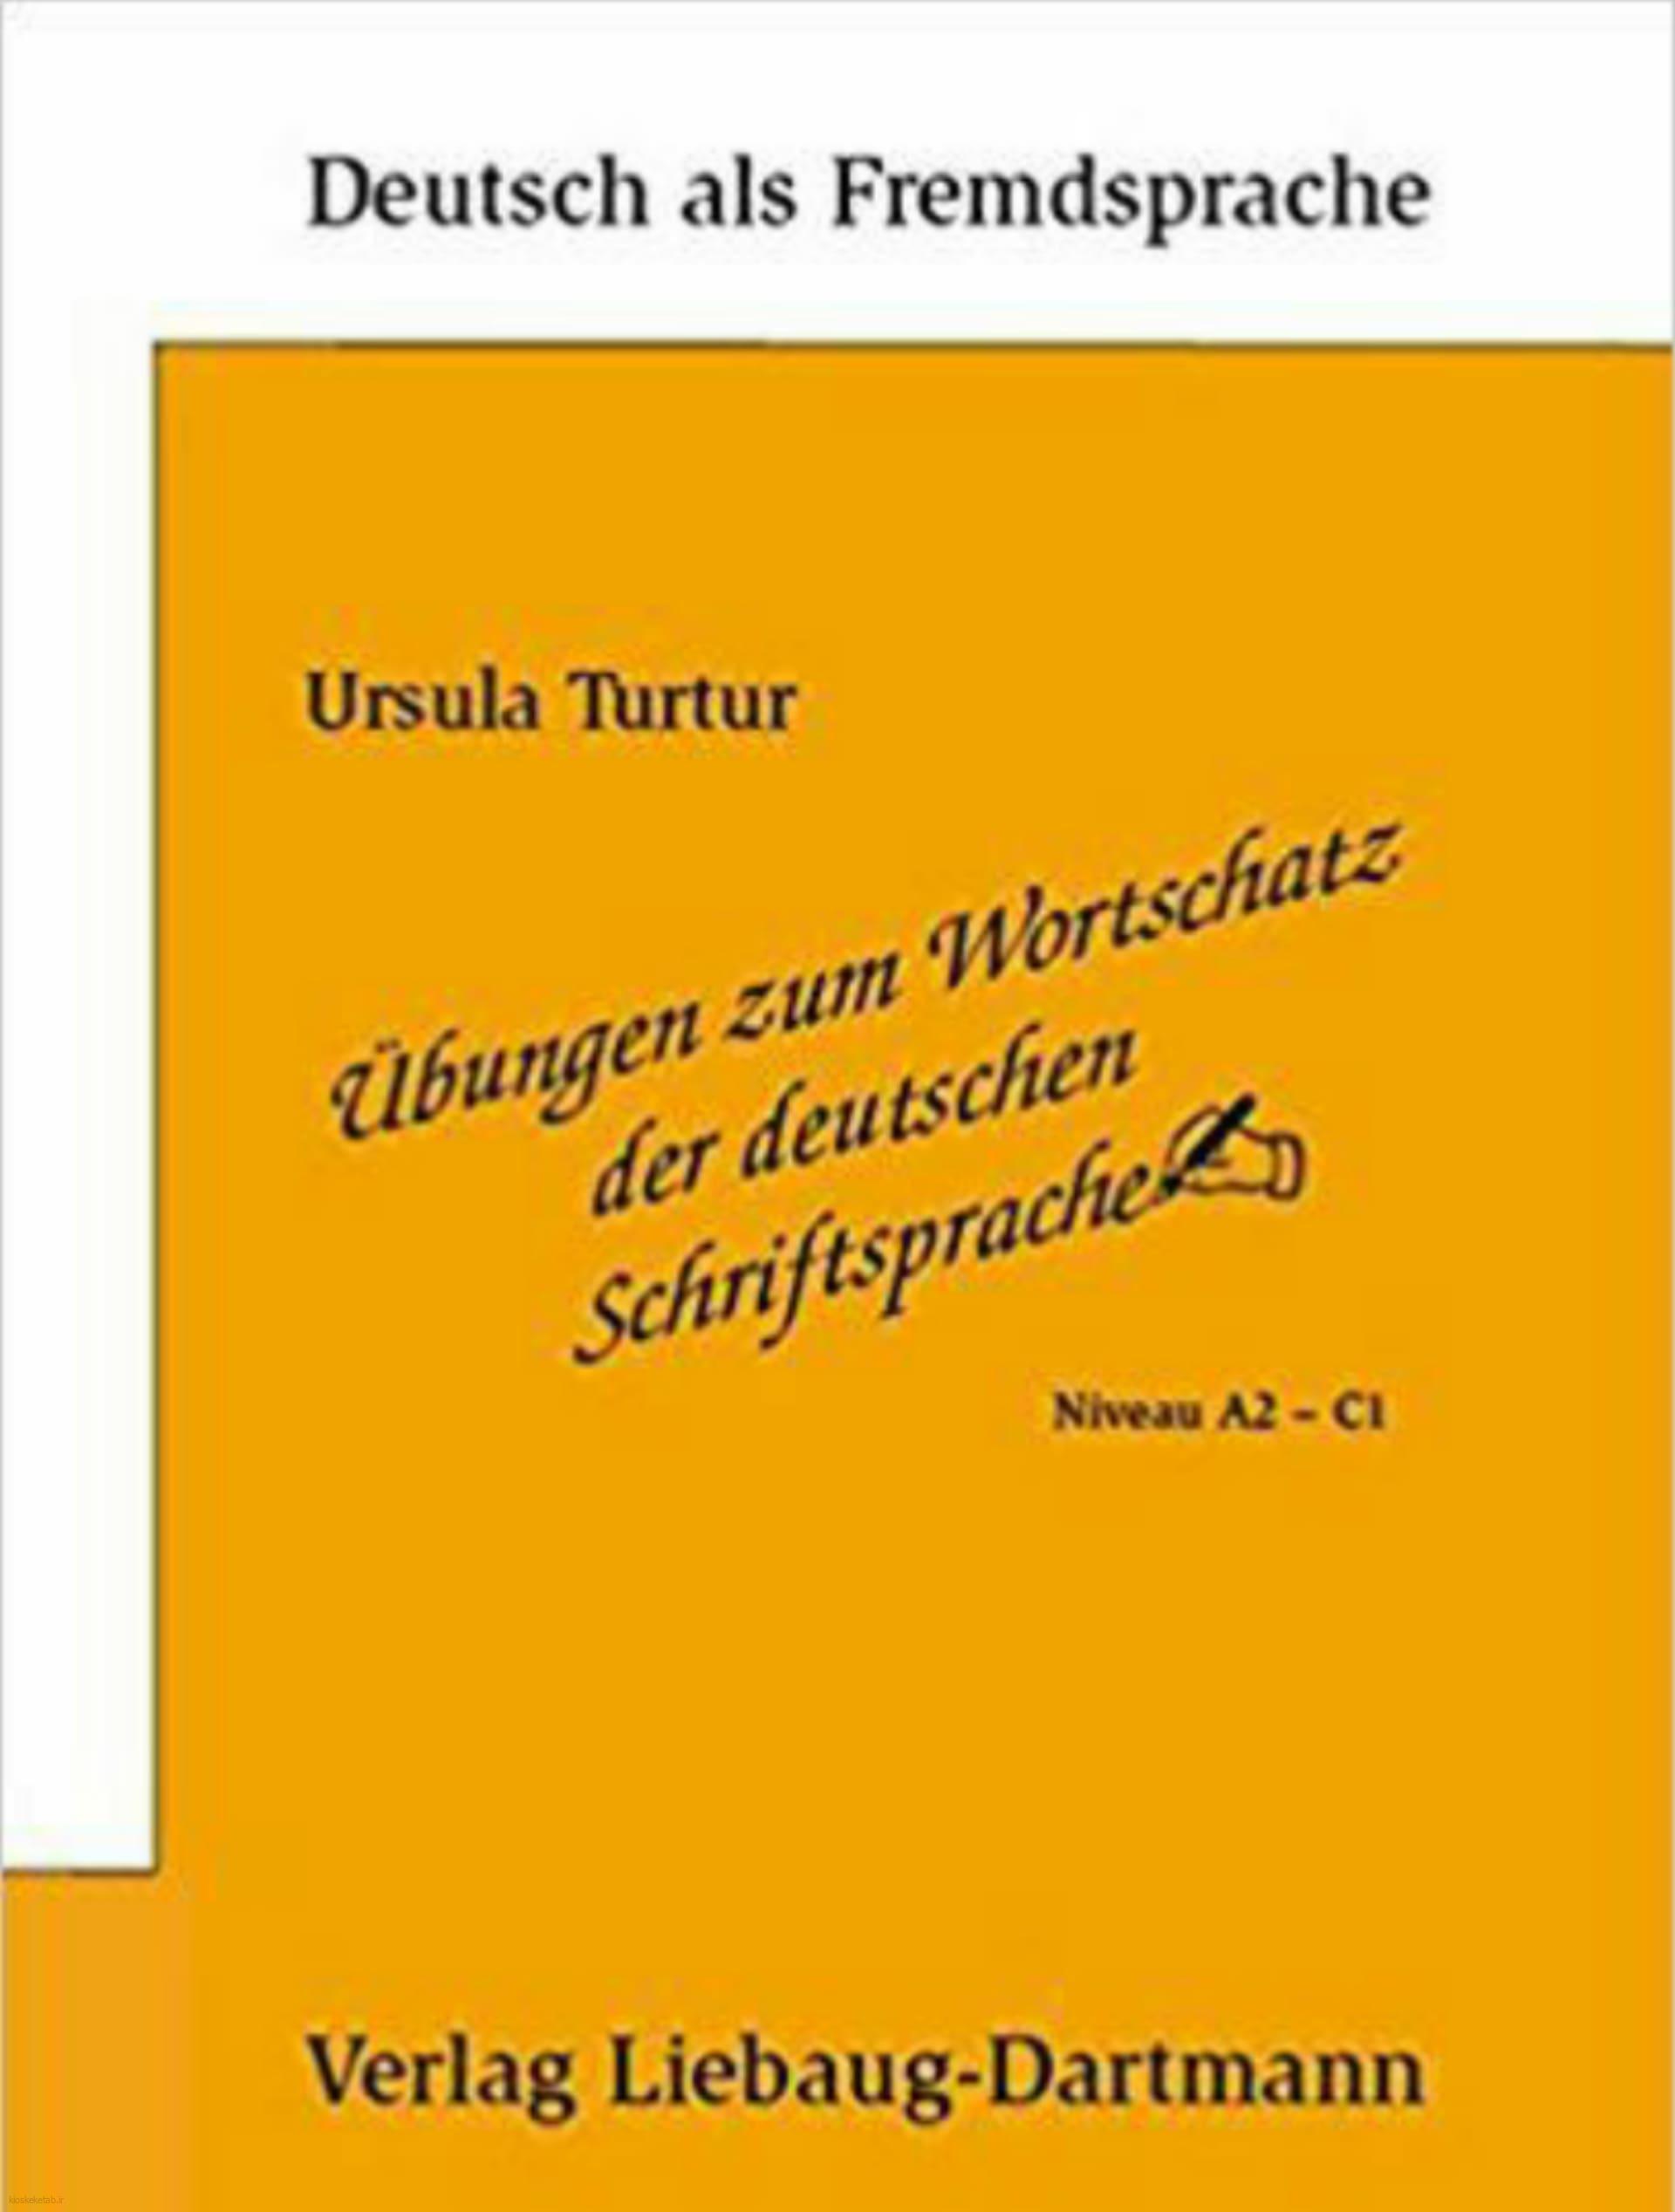 دانلود کتاب آلمانیübungen zum wortschatz der deutschen schriftsprache